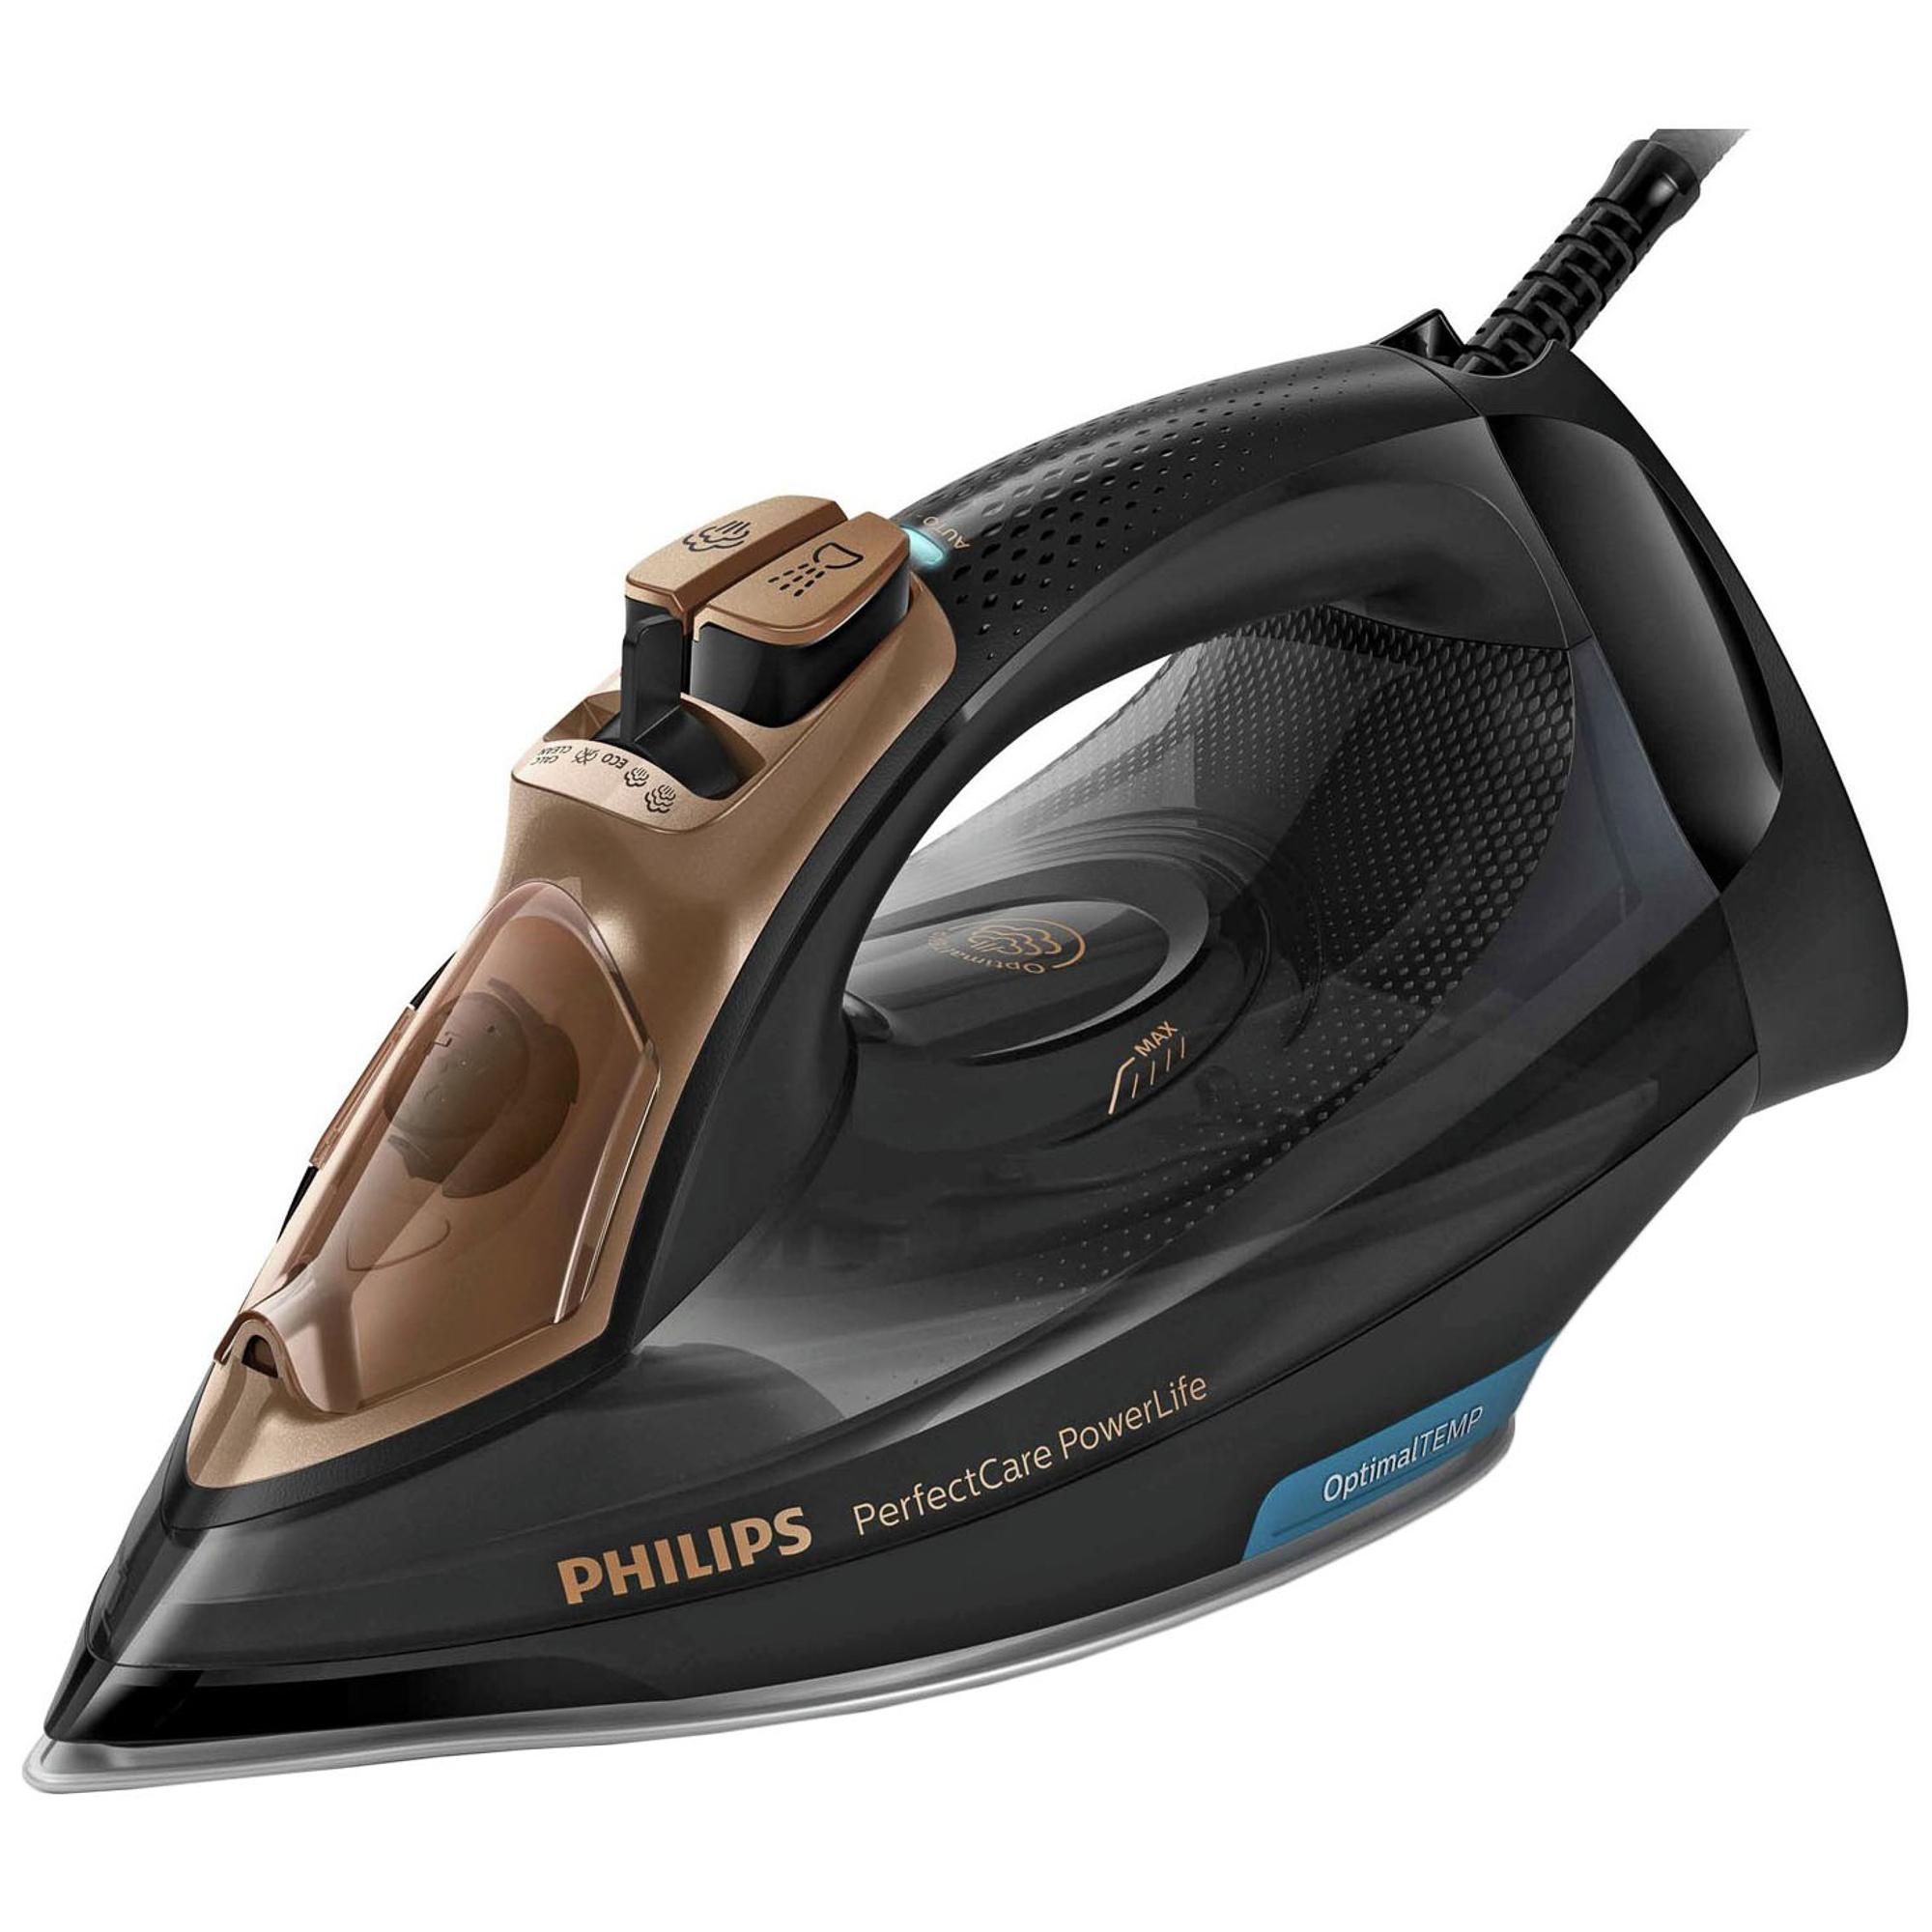 Утюг какой мощности квт. Утюг Philips gc3929/64. Утюг Philips PERFECTCARE. Утюг Philips PERFECTCARE POWERLIFE. Утюг Philips PERFECTCARE POWERLIFE 2400.